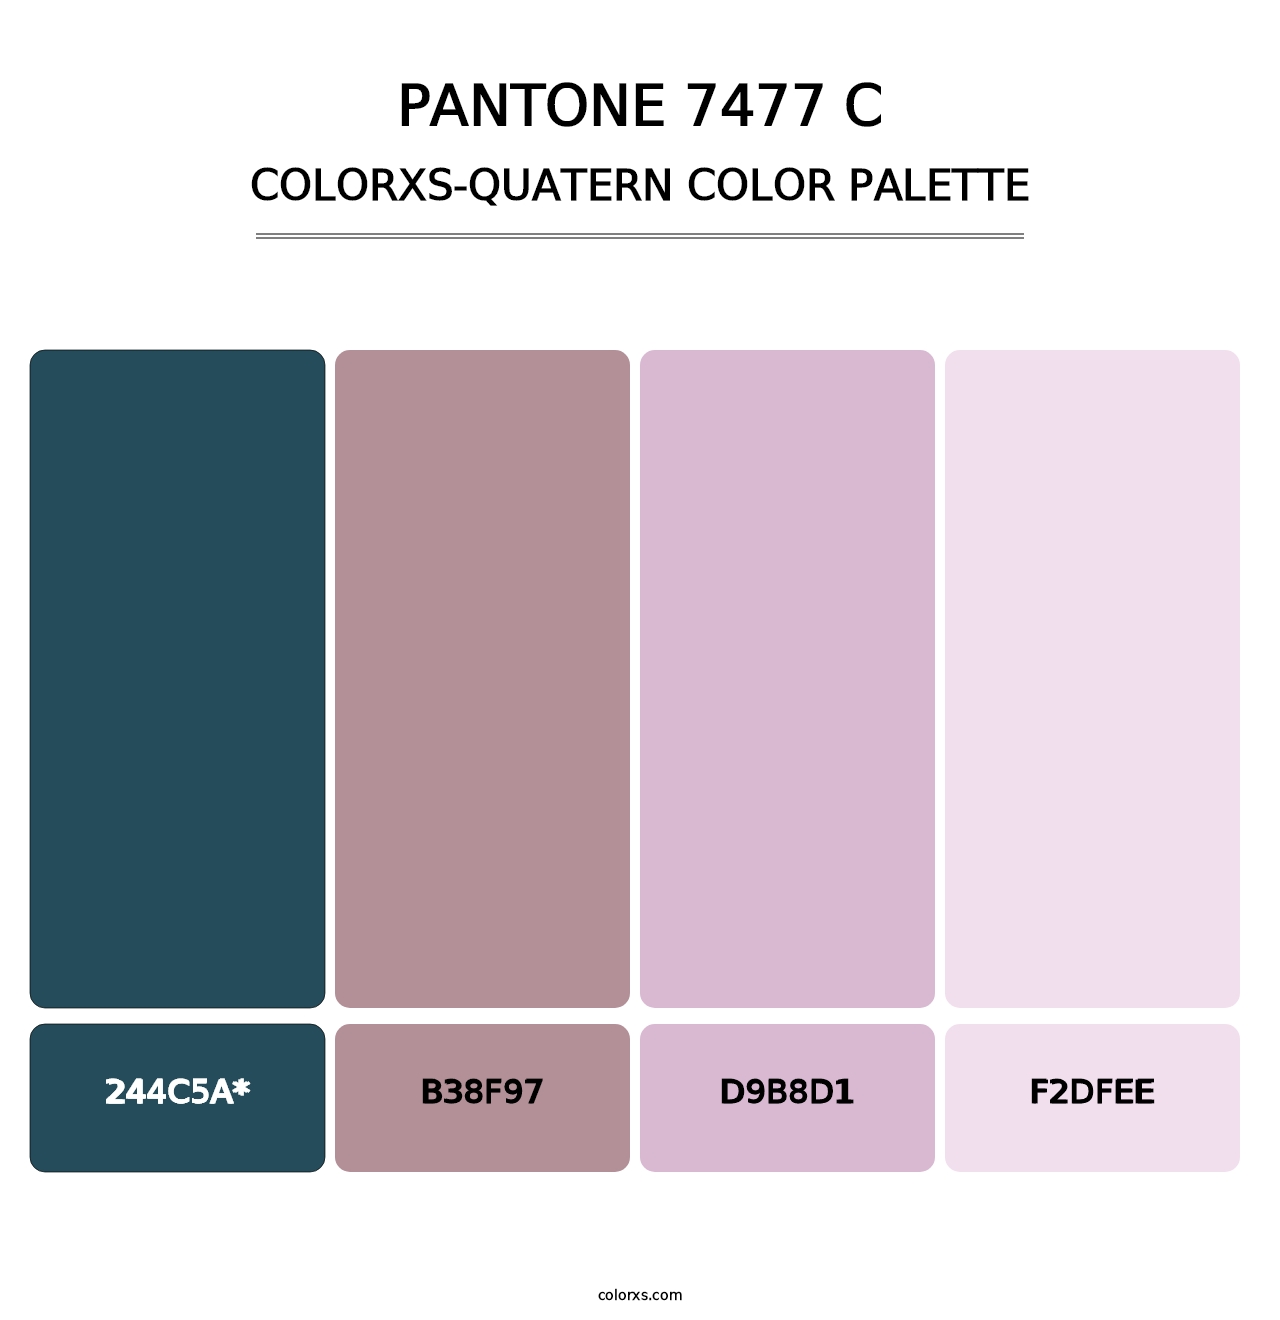 PANTONE 7477 C - Colorxs Quatern Palette